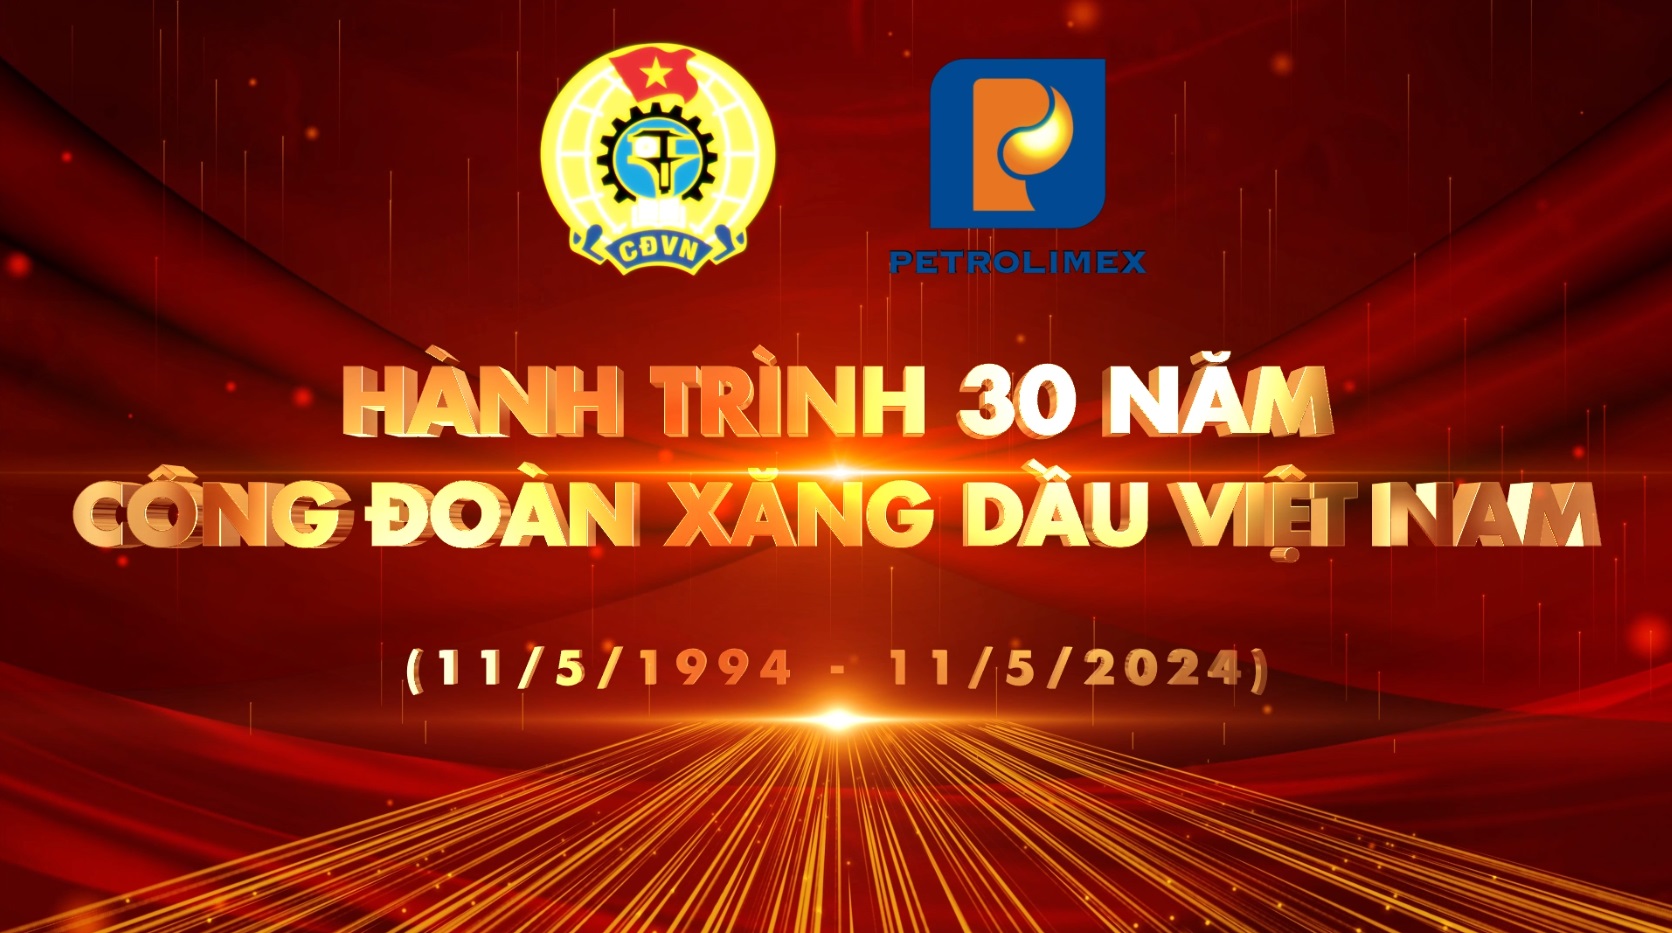 Công đoàn Xăng dầu Việt Nam: 30 năm một hành trình vẻ vang